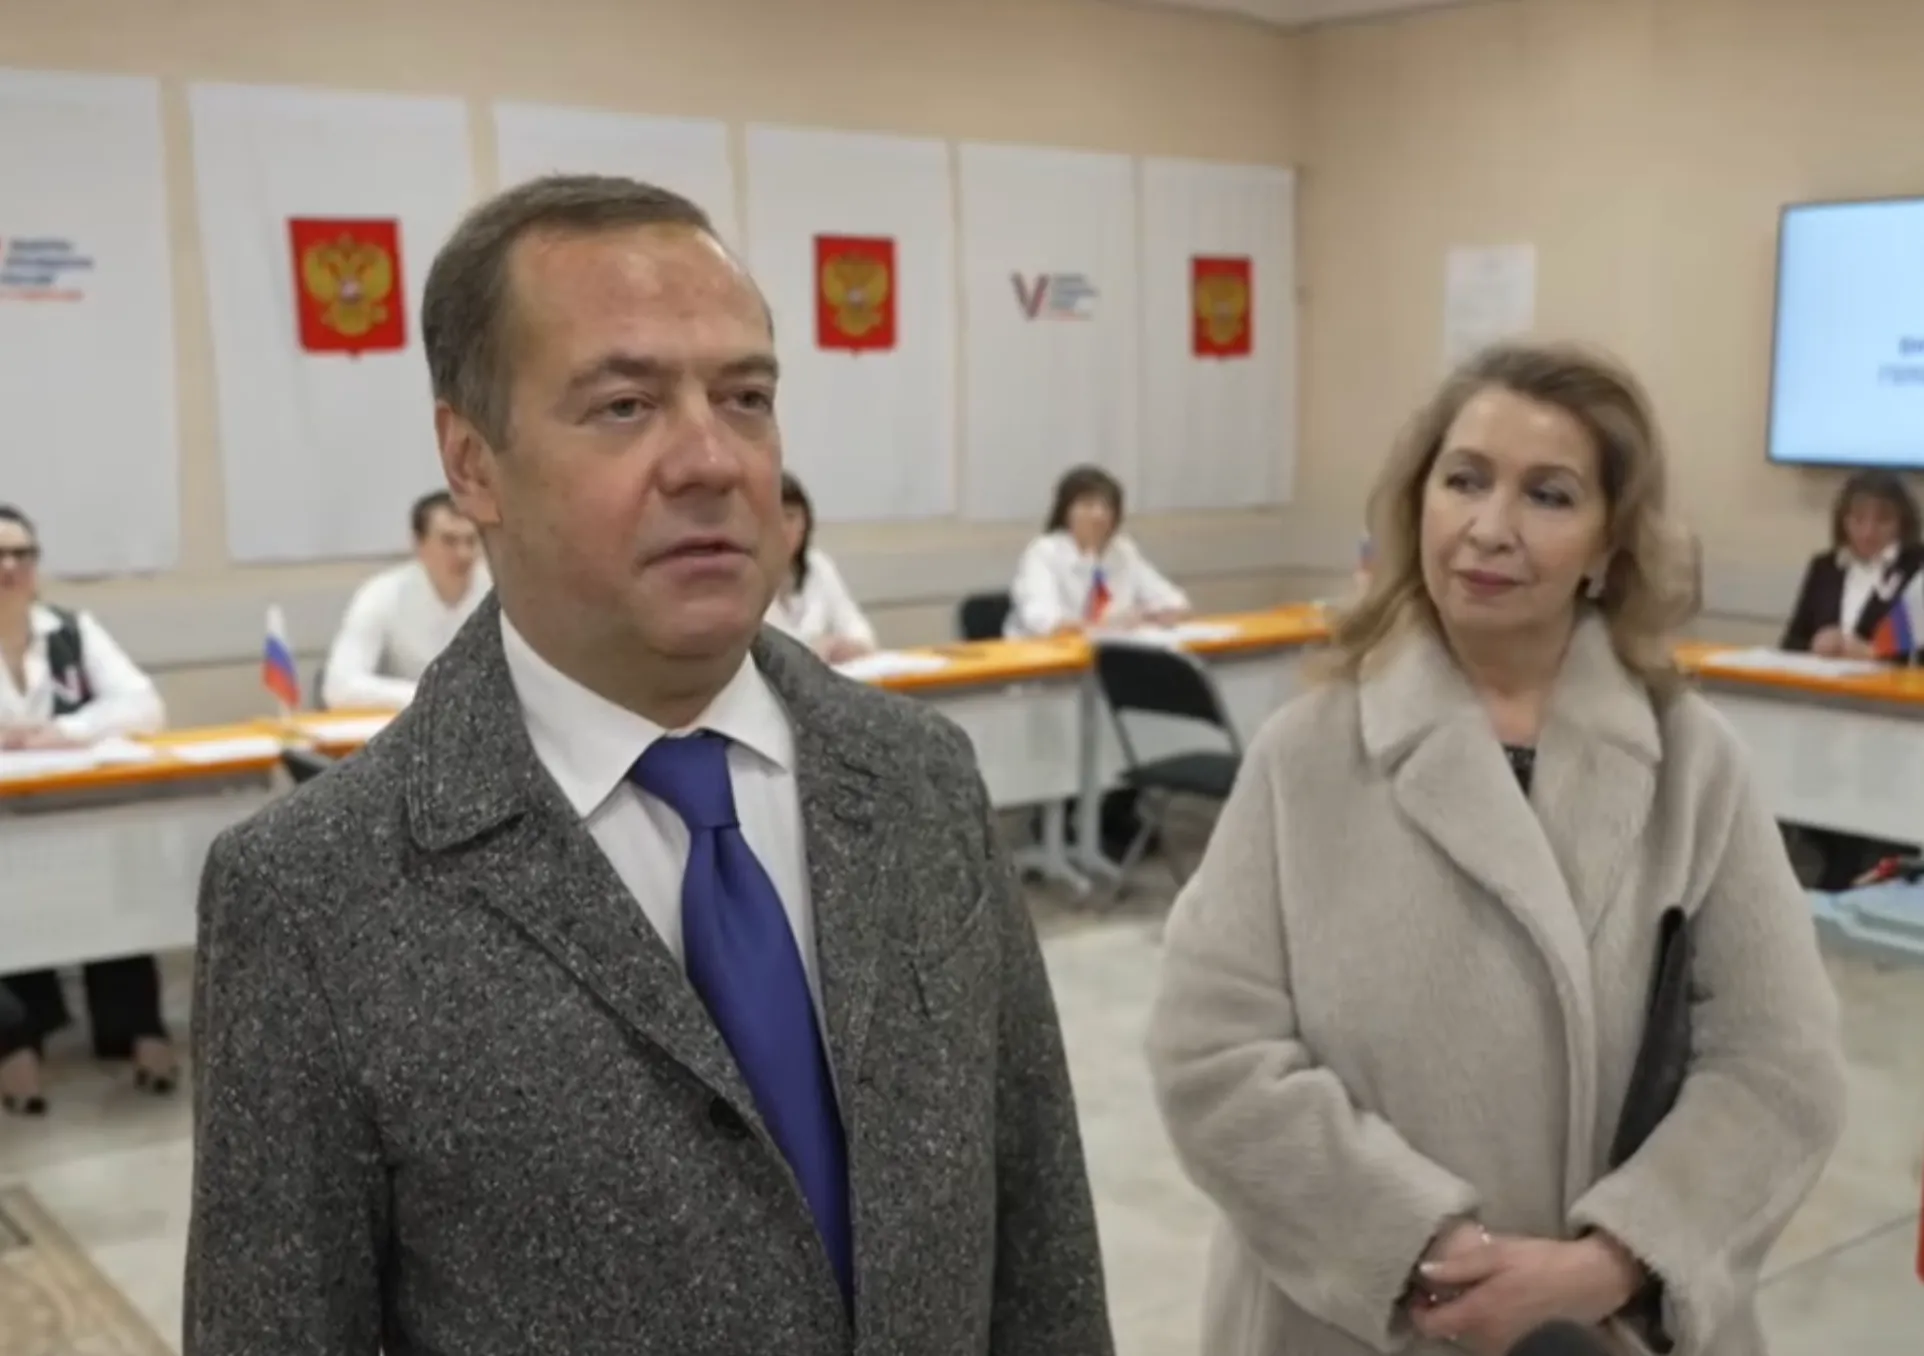 Медведев проголосовал на выборах вместе с женой, у которой сегодня день рождения